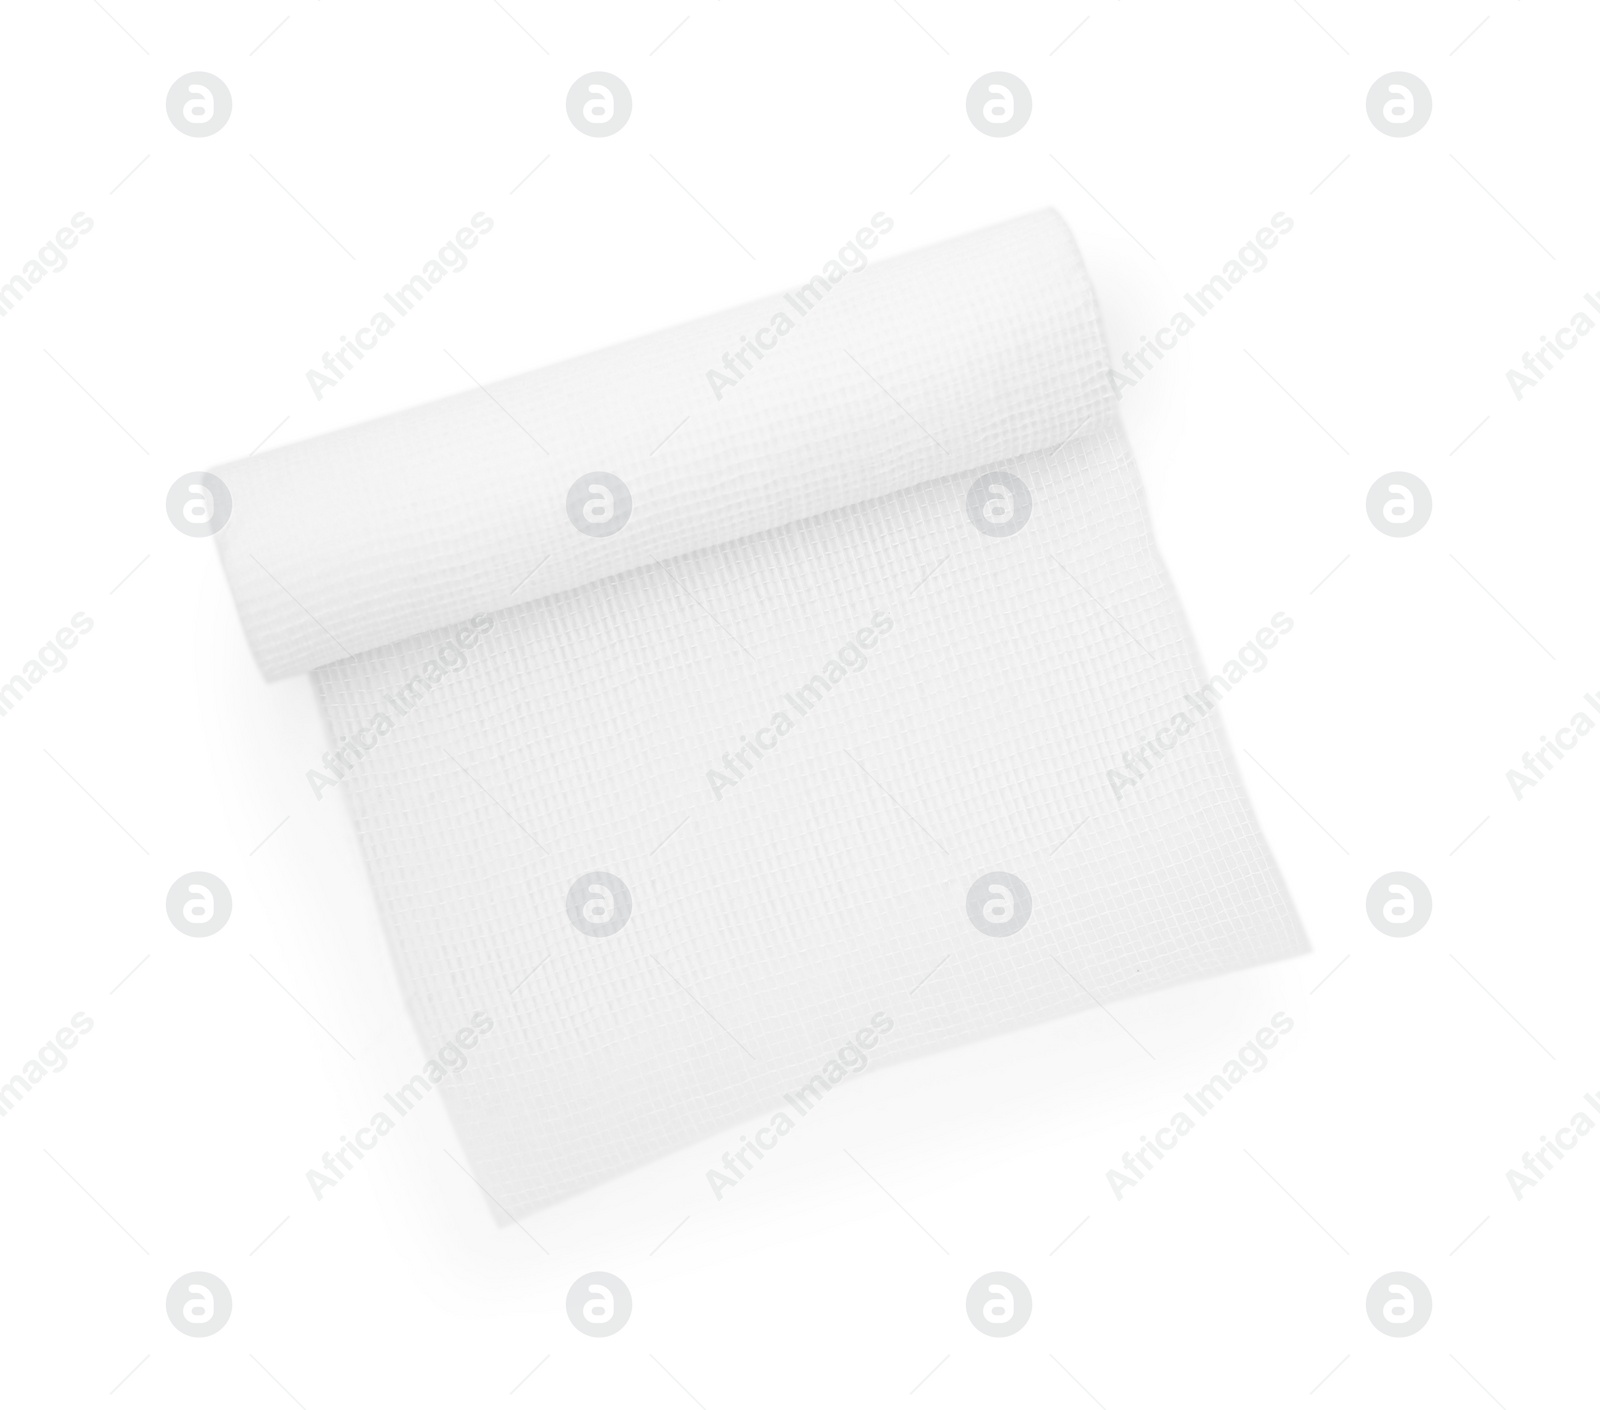 Photo of Medical gauze bandage isolated on white, top view